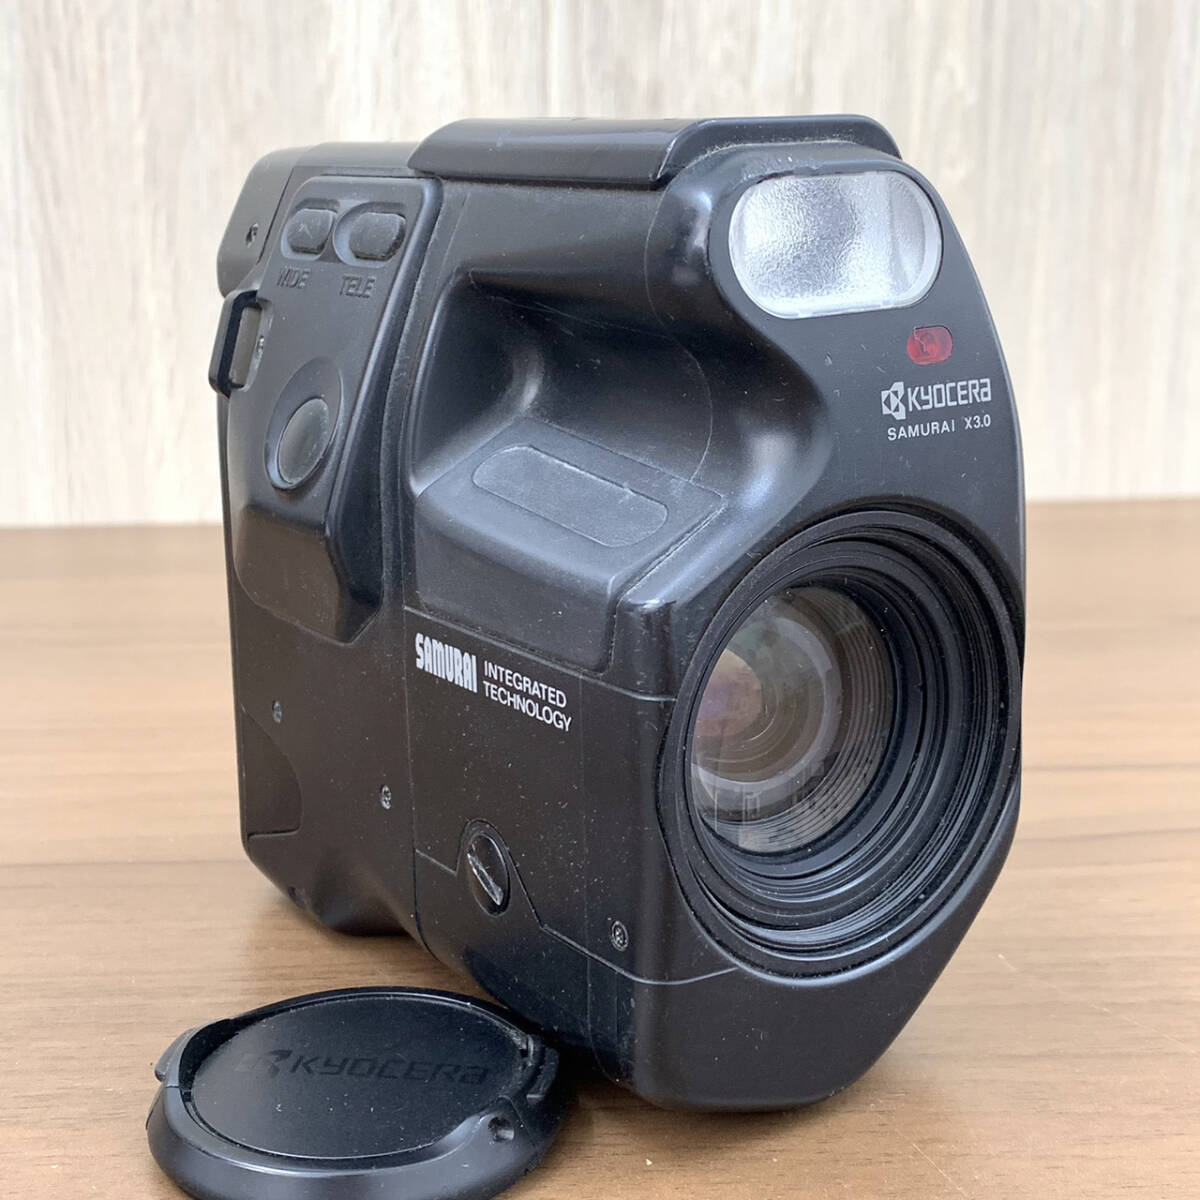 KYOCERA 京セラ SAMURAI X3.0 サムライ フィルム カメラ ZOOM LENS ズーム レンズ 25-75mm f3.5-4.5 ジャンク レトロ 撮影 機材 1795_画像1